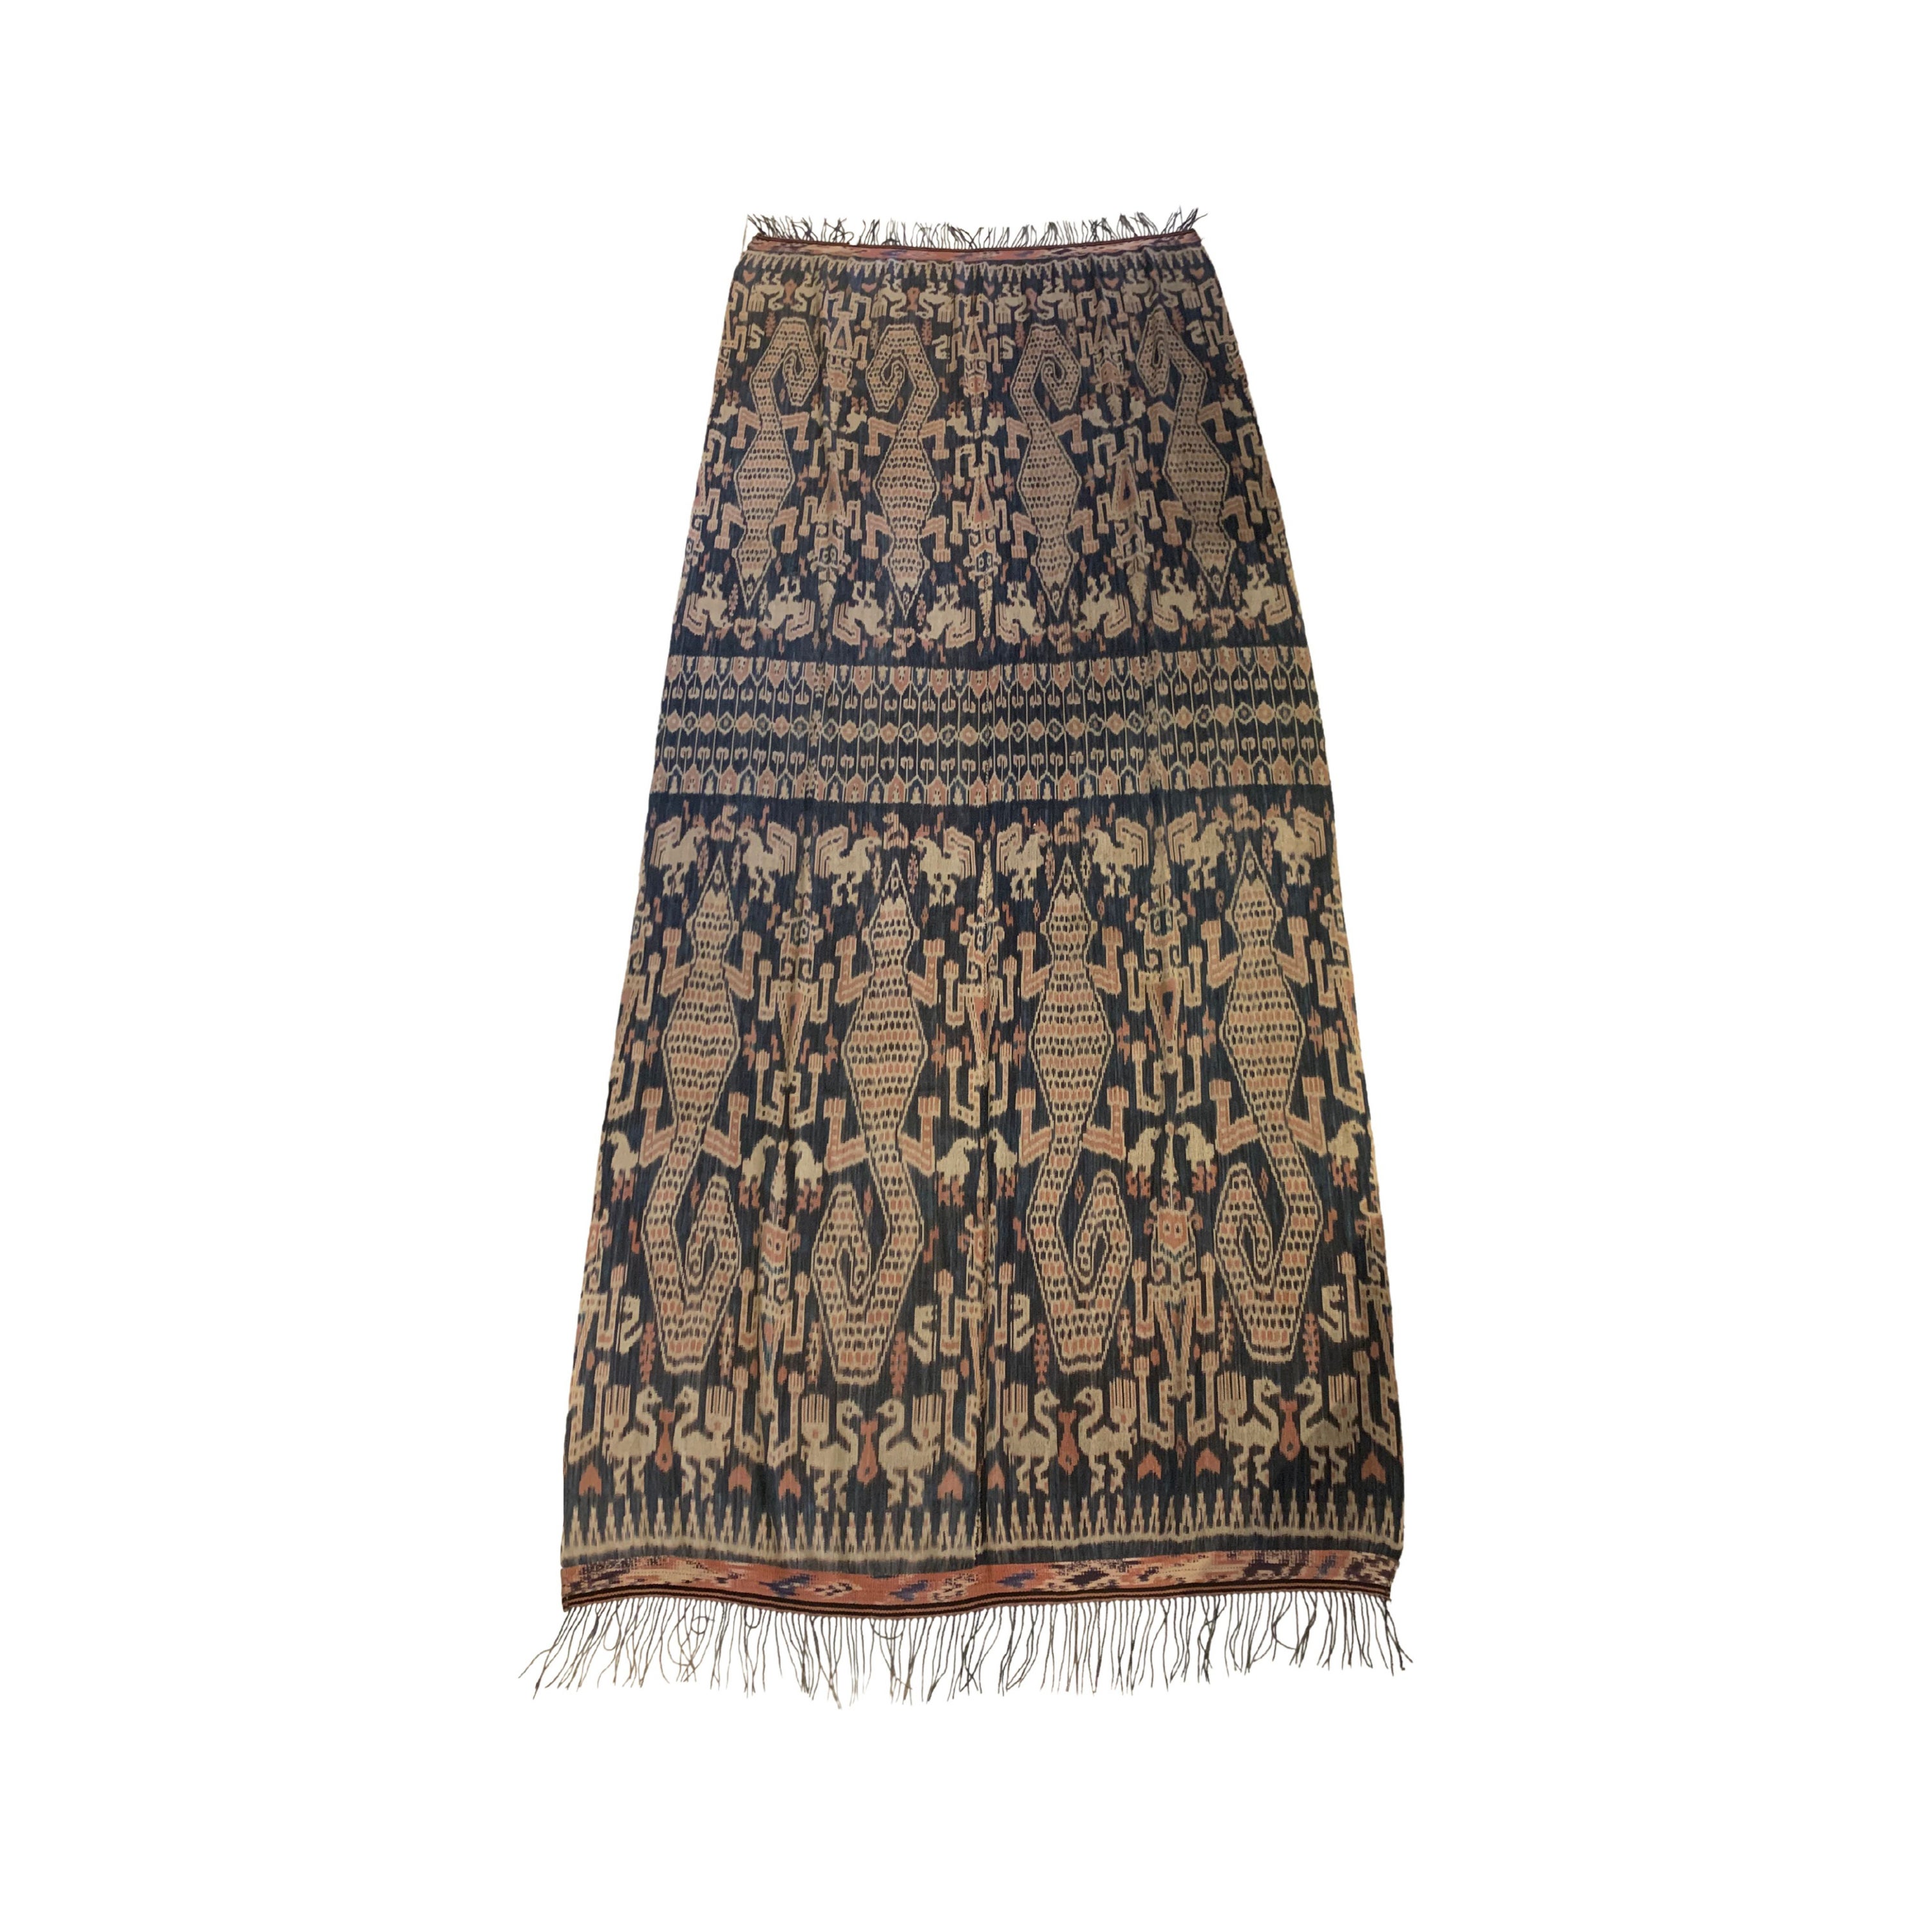 Textile Ikat à motifs tribaux de l'île de Sumba, Indonésie